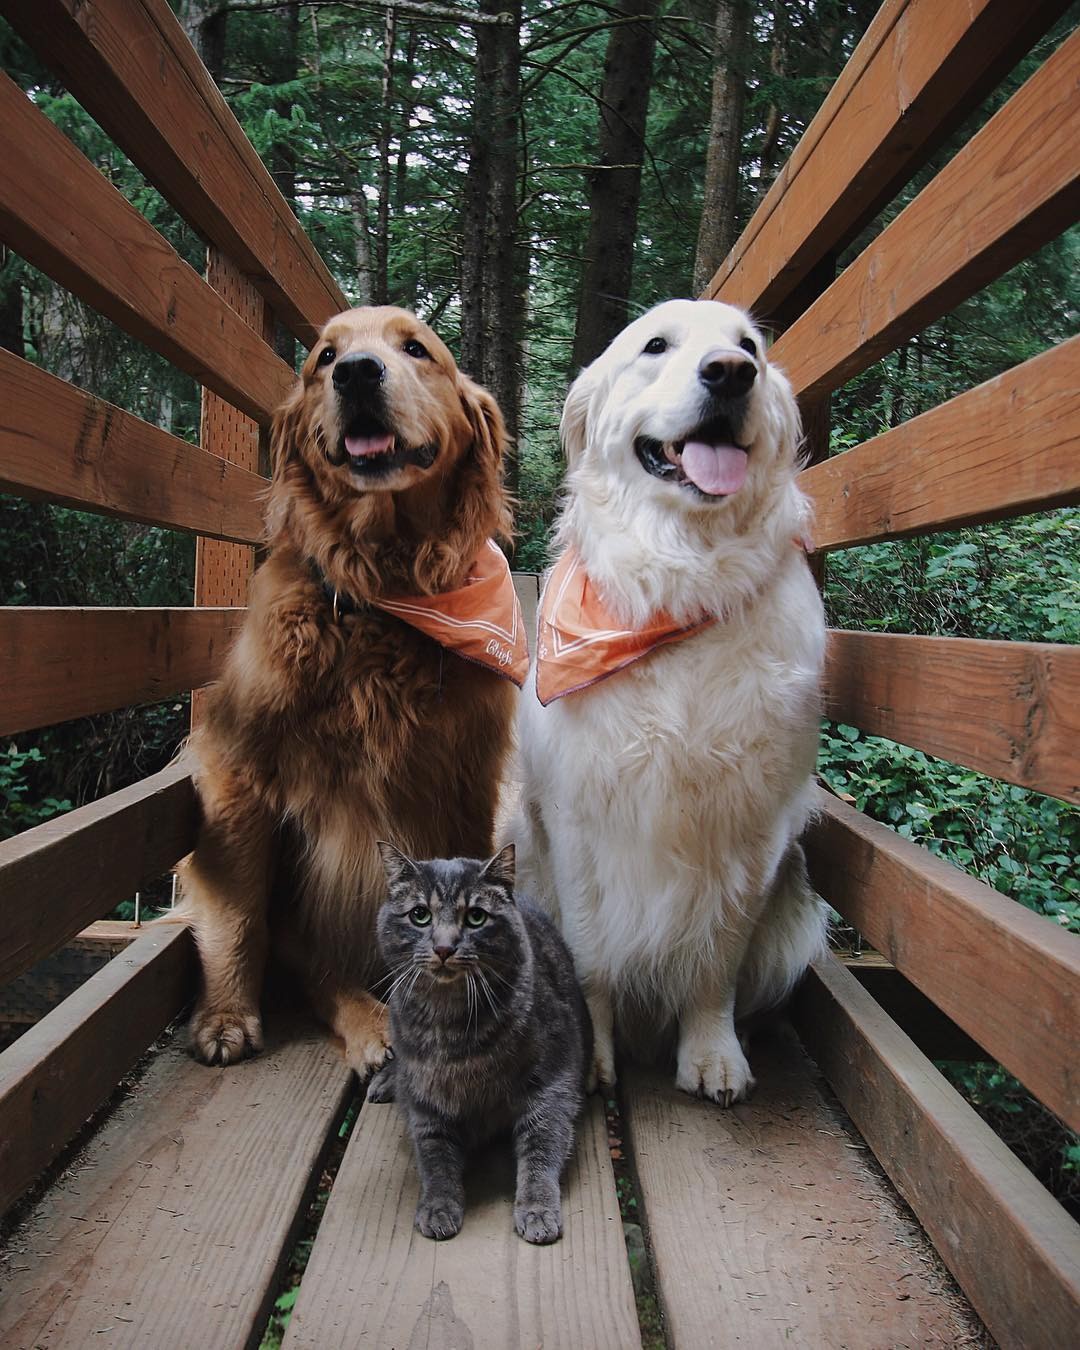 Xem hình ảnh này để thấy tình bạn đáng yêu giữa hai chú chó dính với nhau. Họ cùng đồng hành và không bỏ lỡ nhau tại bất cứ điểm nào. Nếu bạn muốn thấy tình bạn chân thành như thế, hãy xem hình ảnh đó.